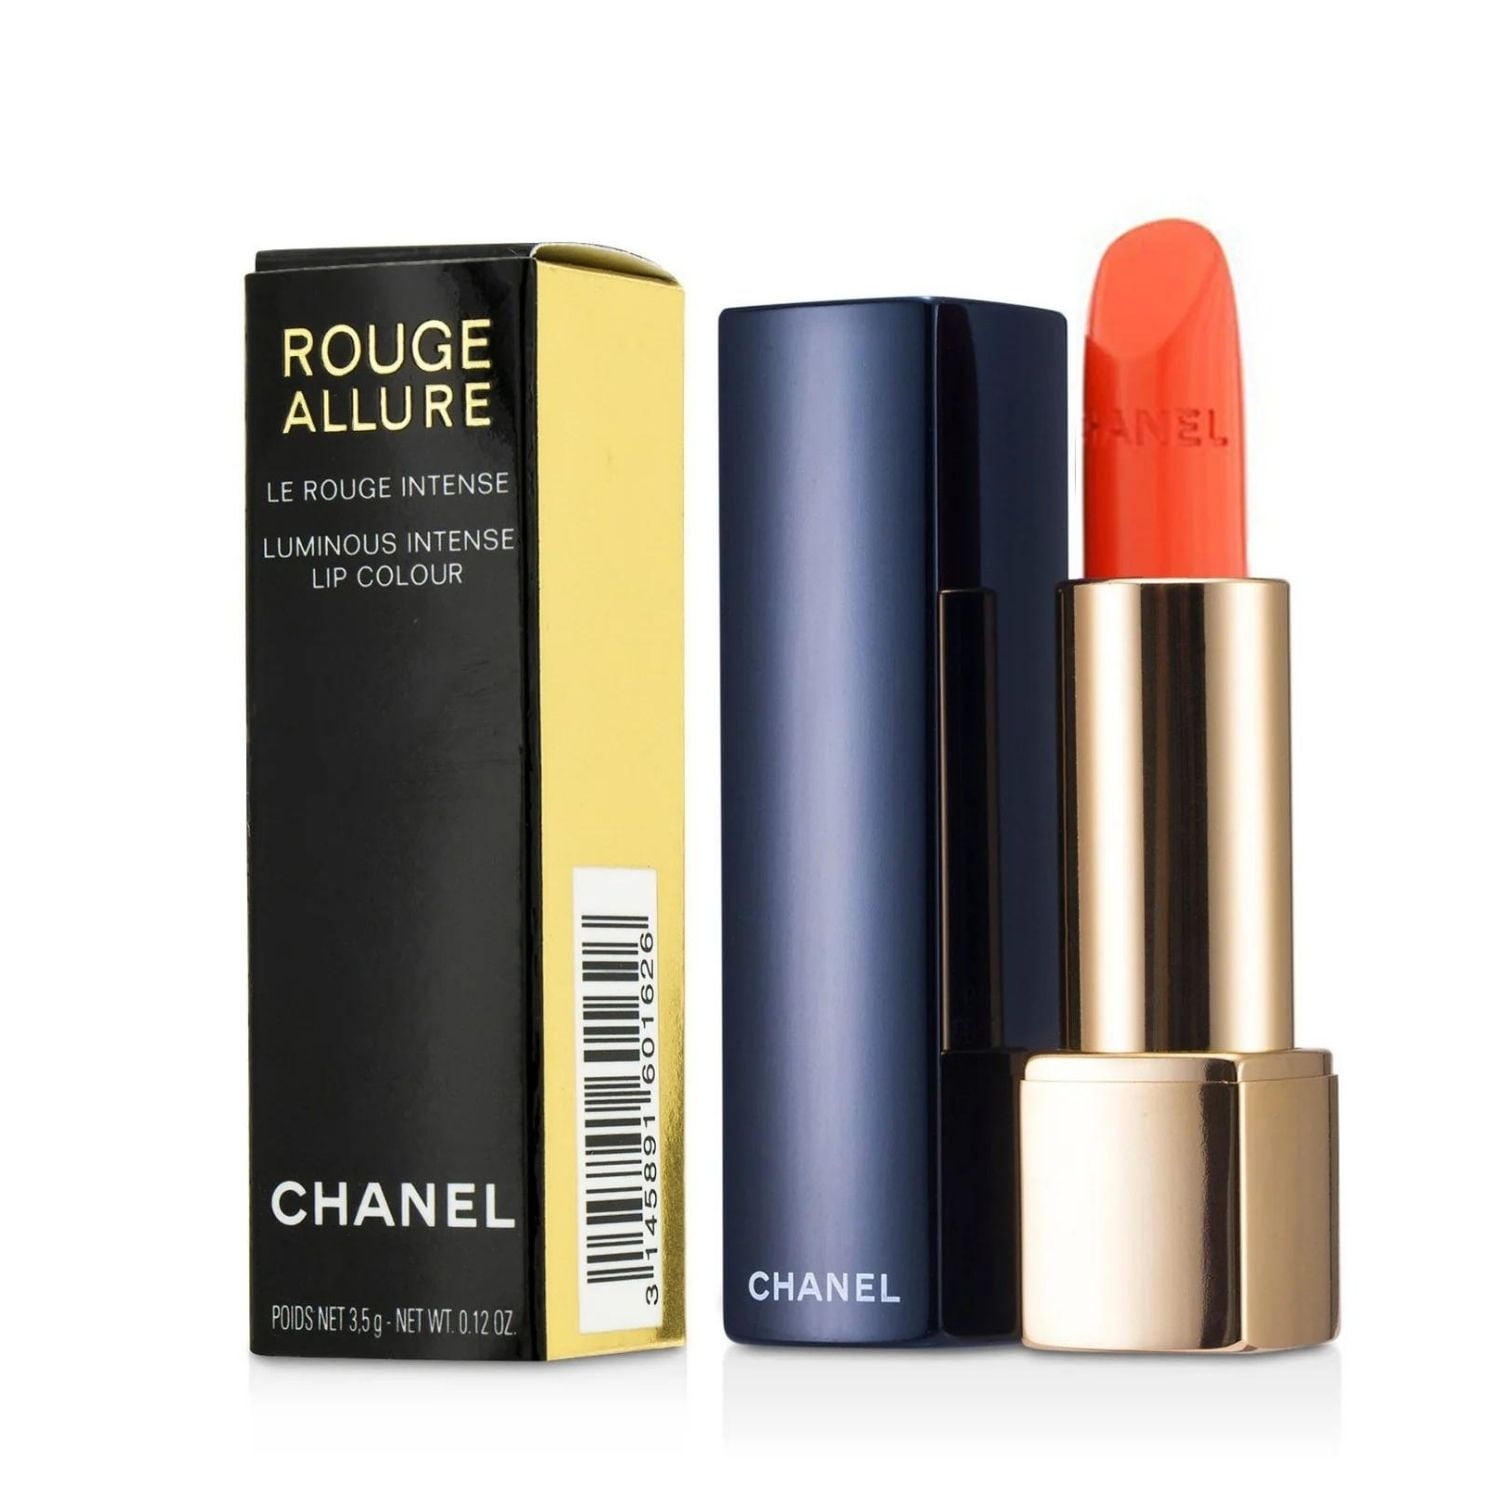 Chanel Rouge Allure Luminous Intense Lip Colour, Rouge Noir 109 - 0.12 oz tube